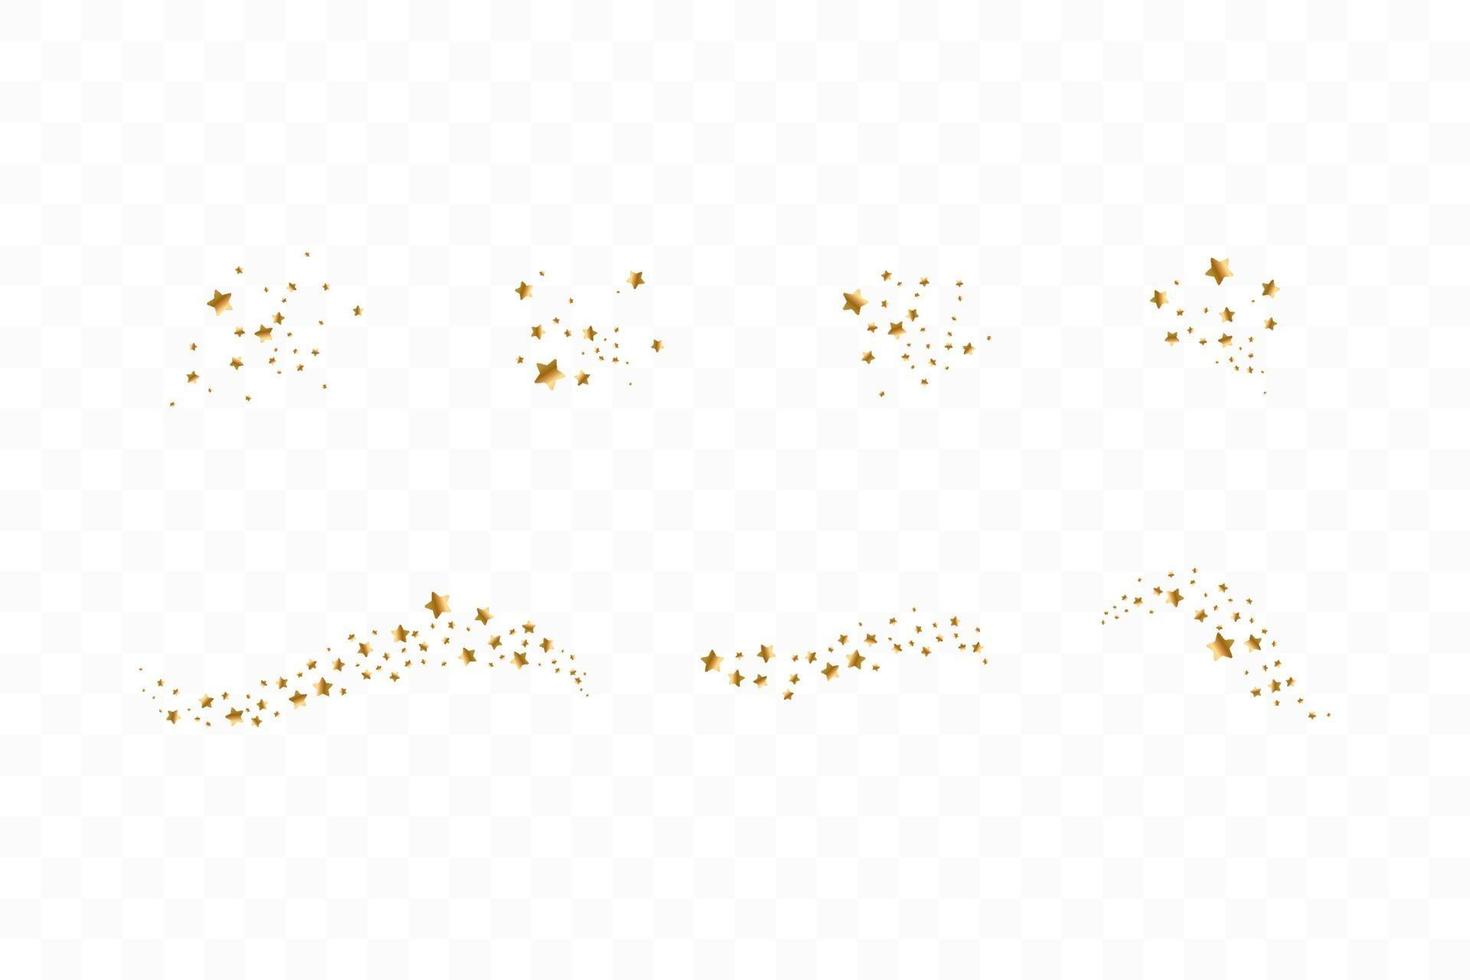 uppsättning gyllene fallande stjärnor. moln av gyllene stjärnor isolerad bakgrund. vektor illustration. meteoroid, komet, asteroid, stjärnor